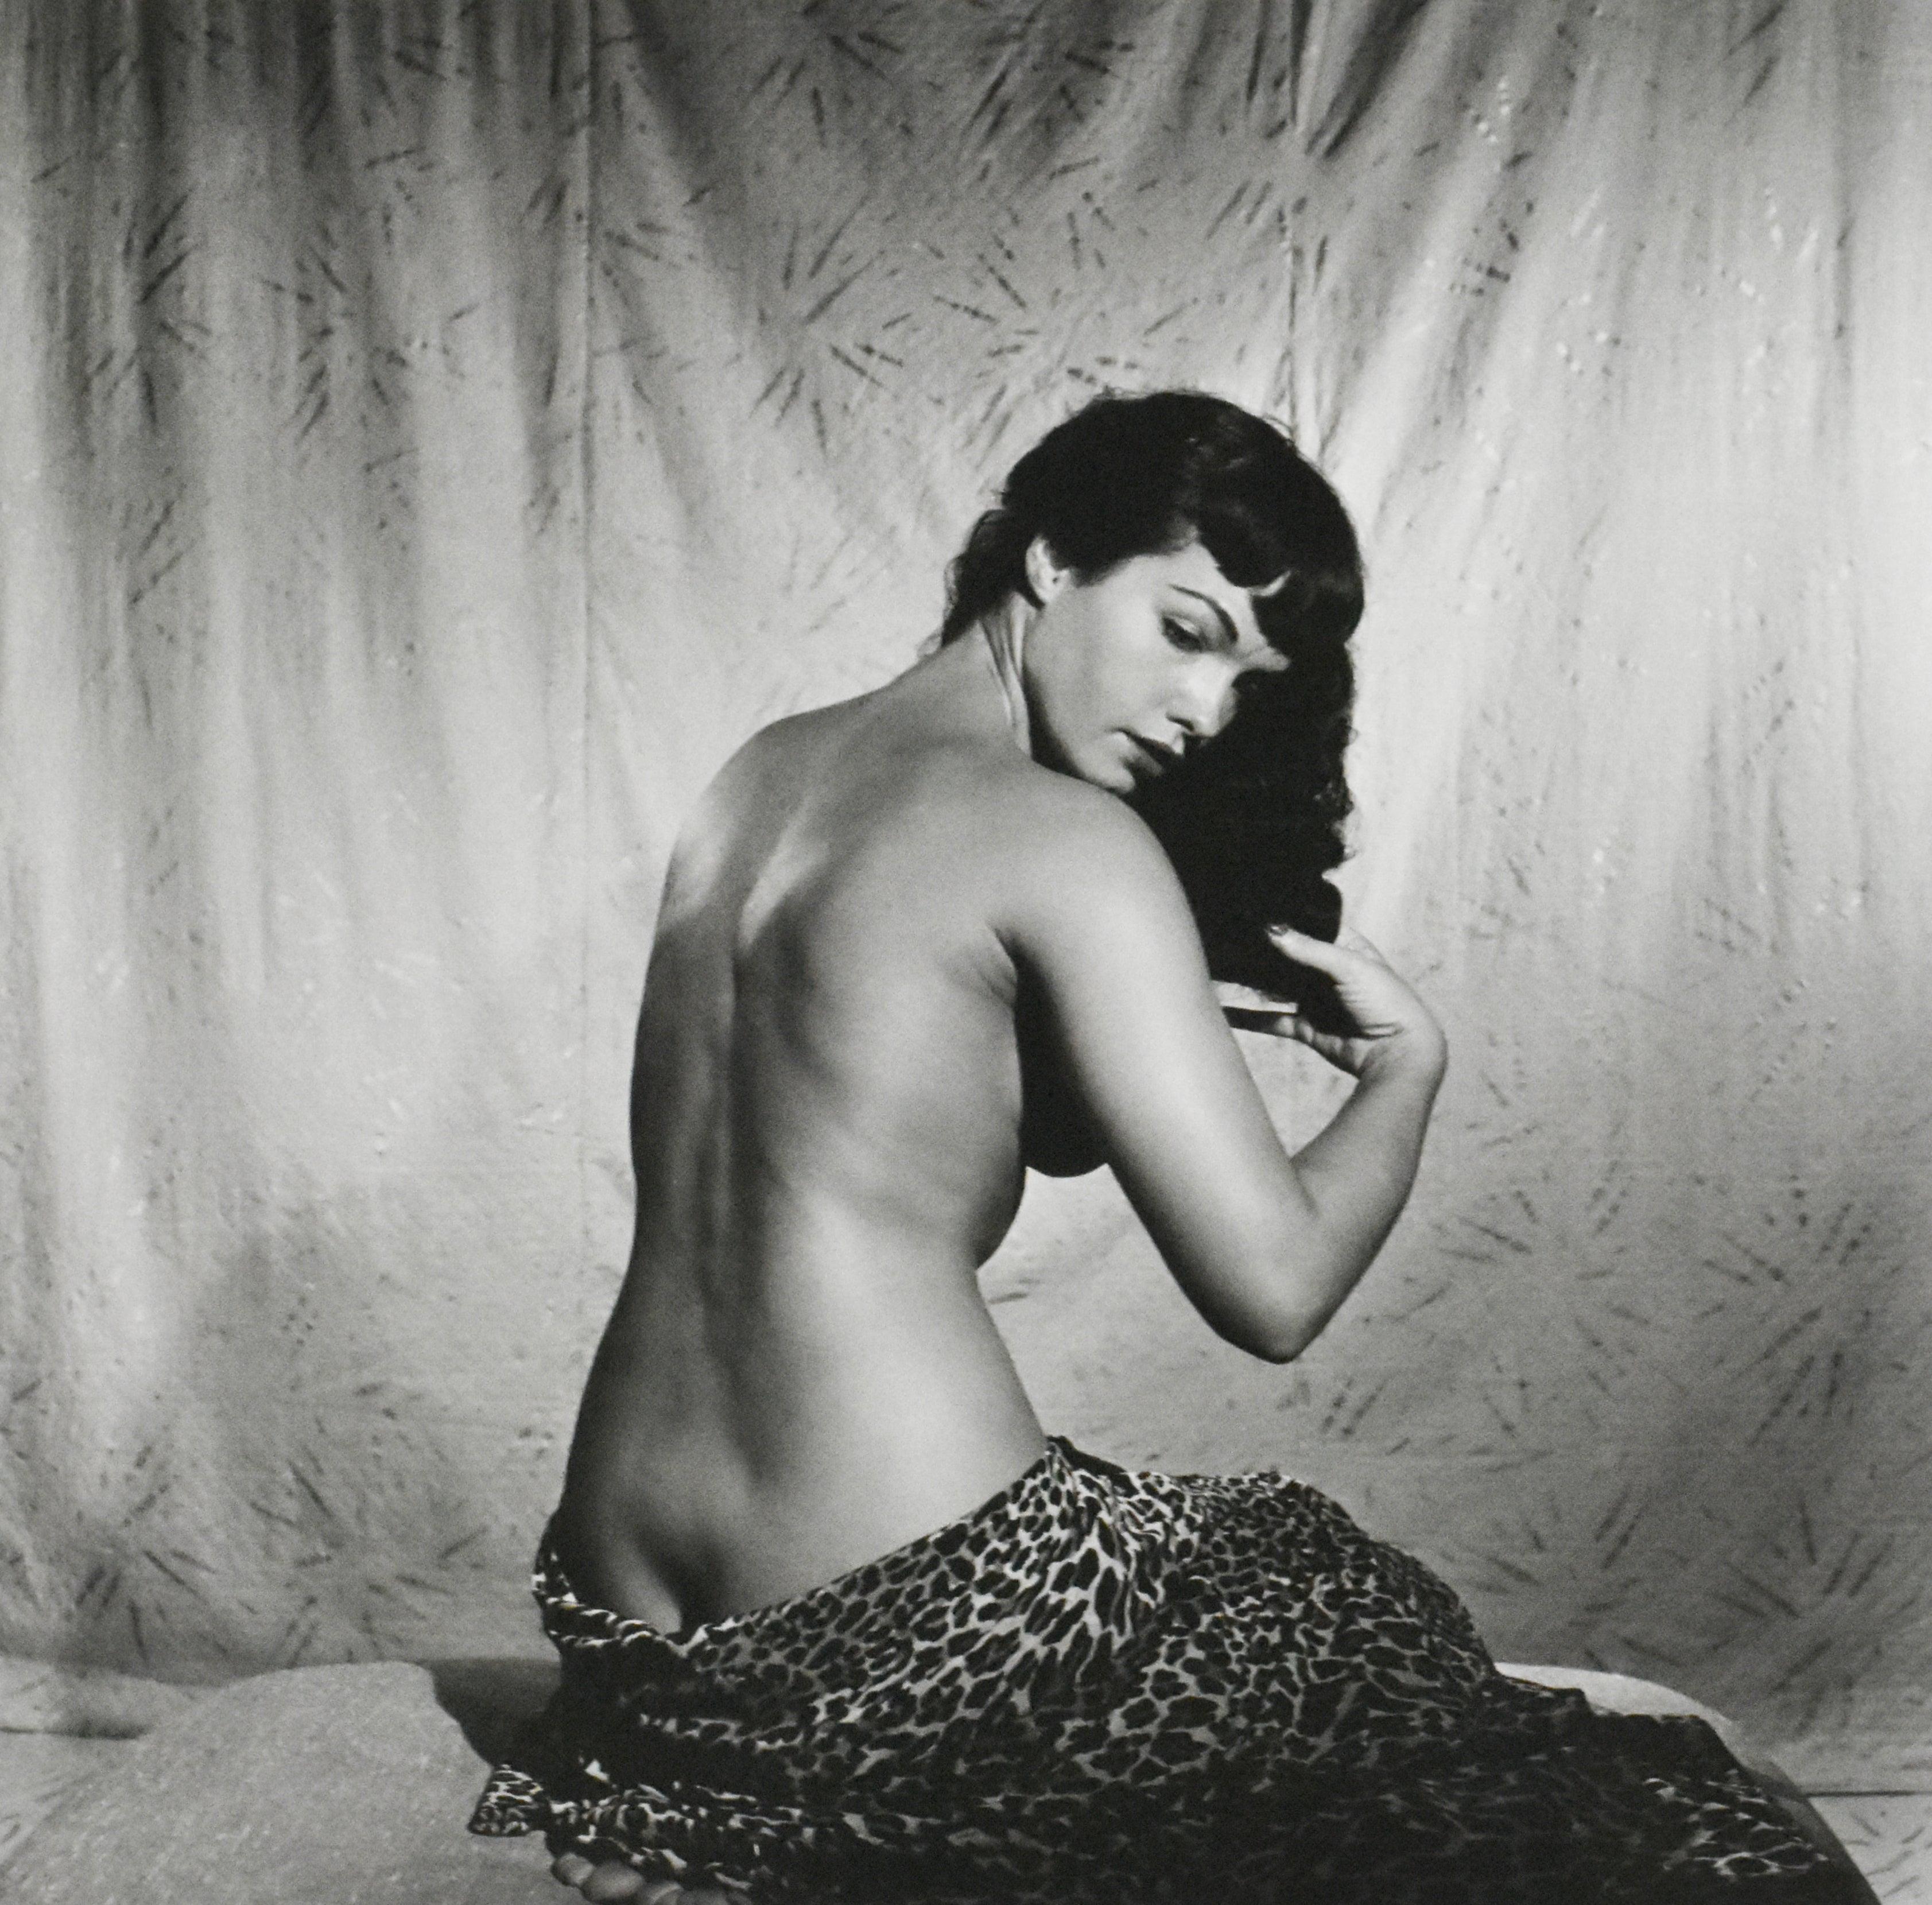 Bettie Page „Bürschendes Haar“, erste Aufnahme 1954 – Photograph von Bunny Yeager